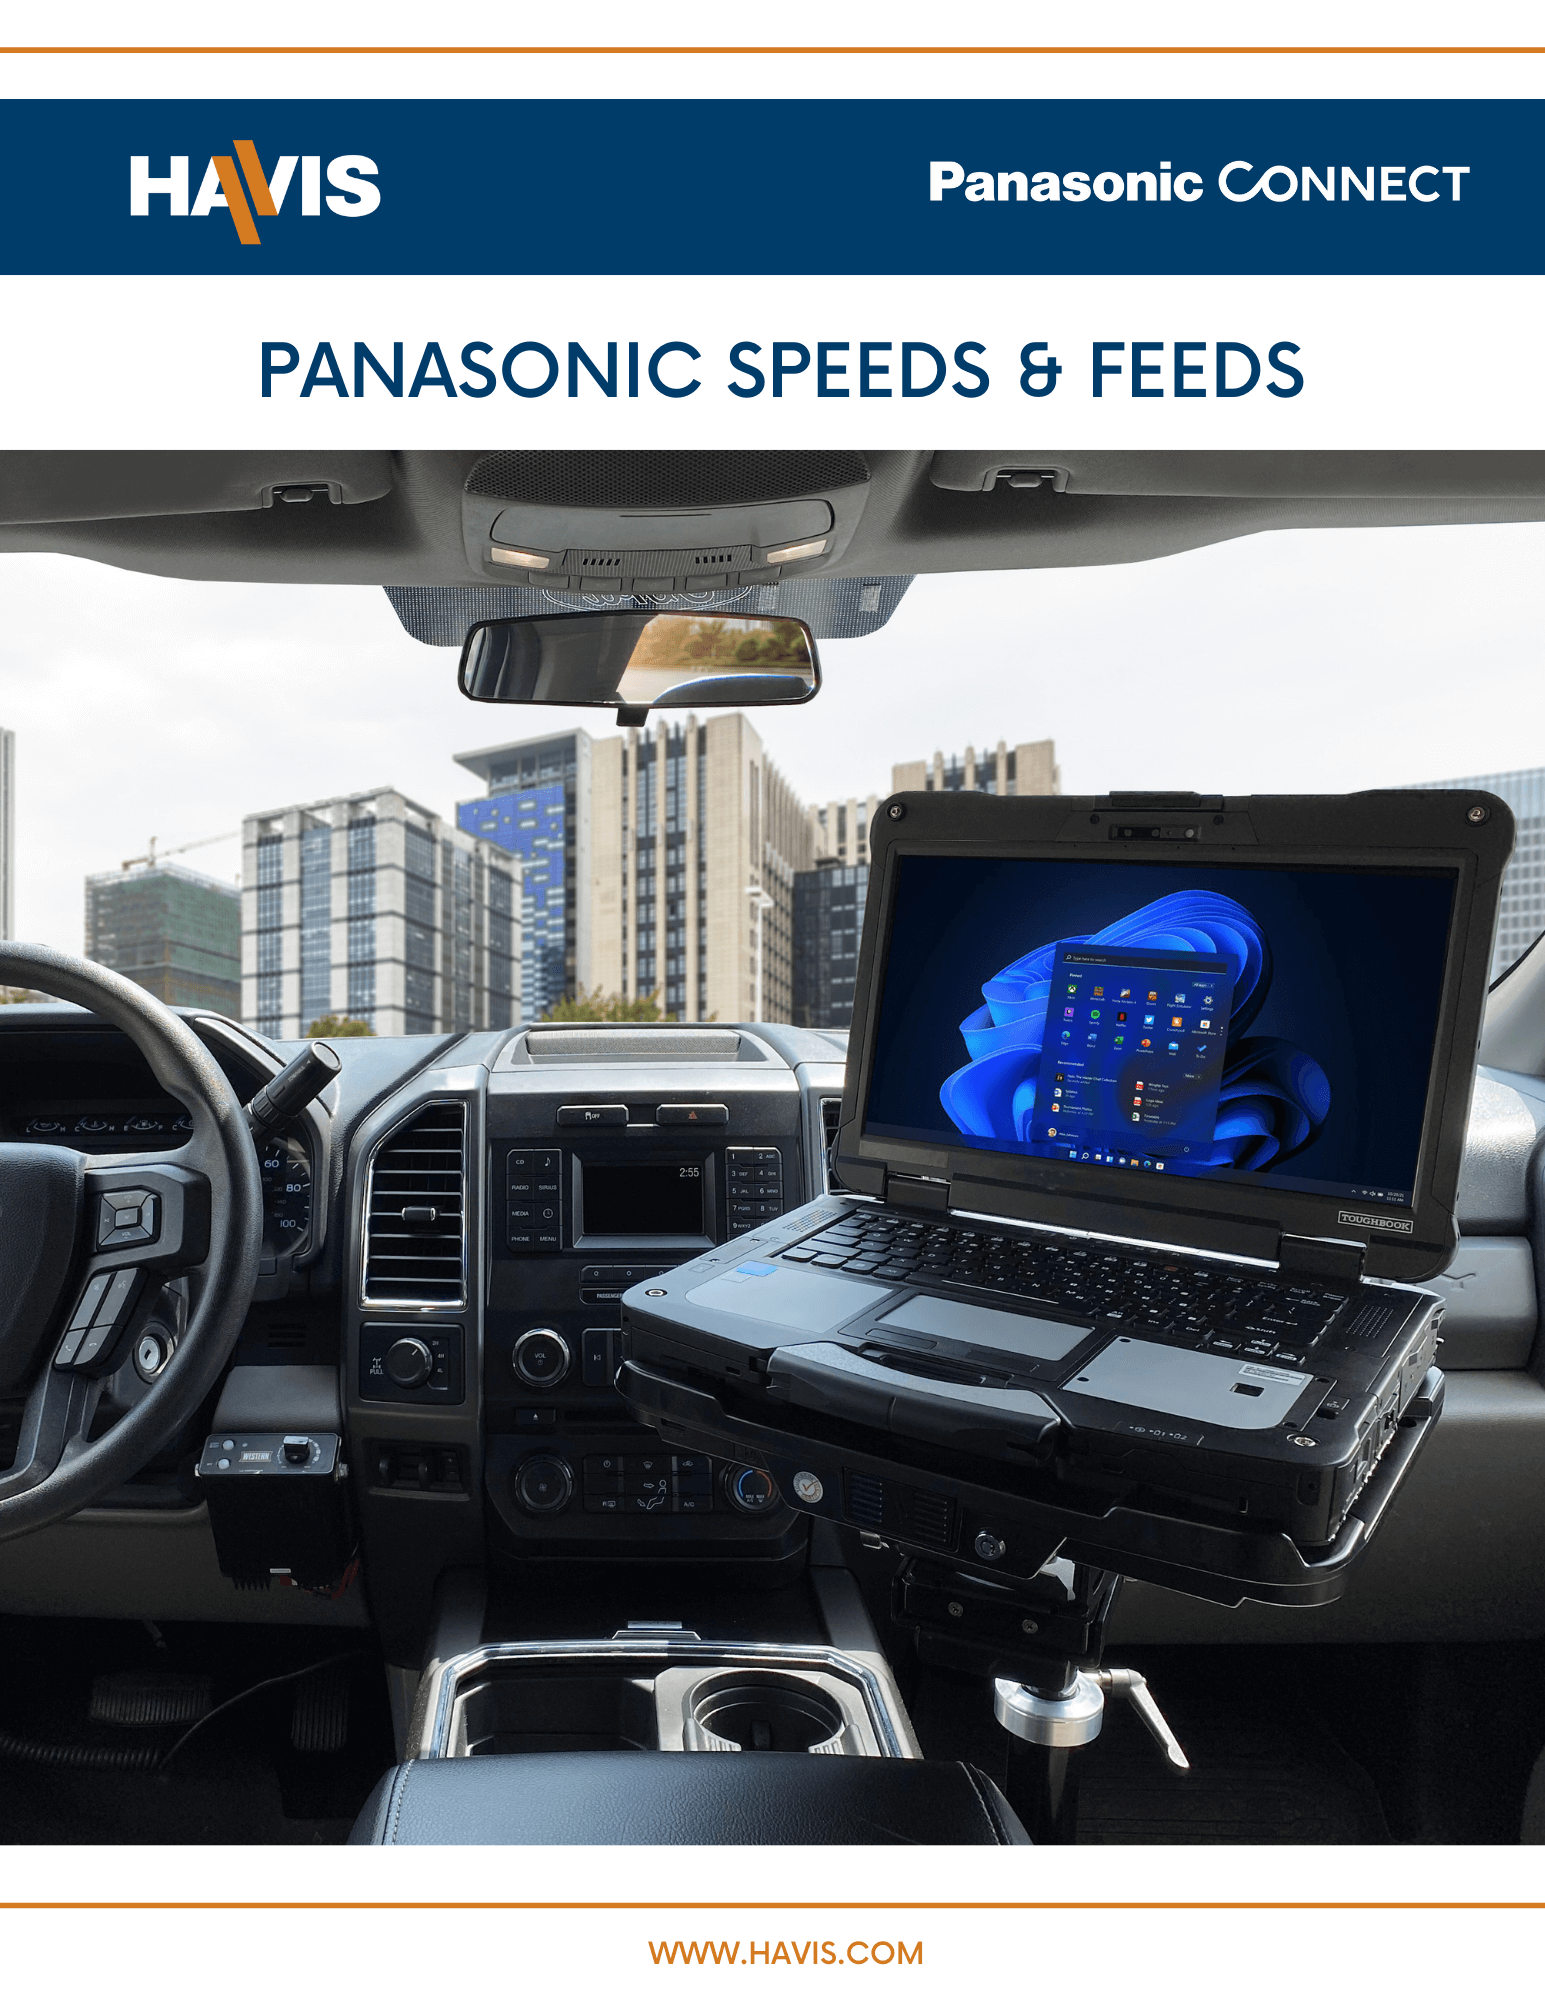 Panasonic Speeds & Feeds